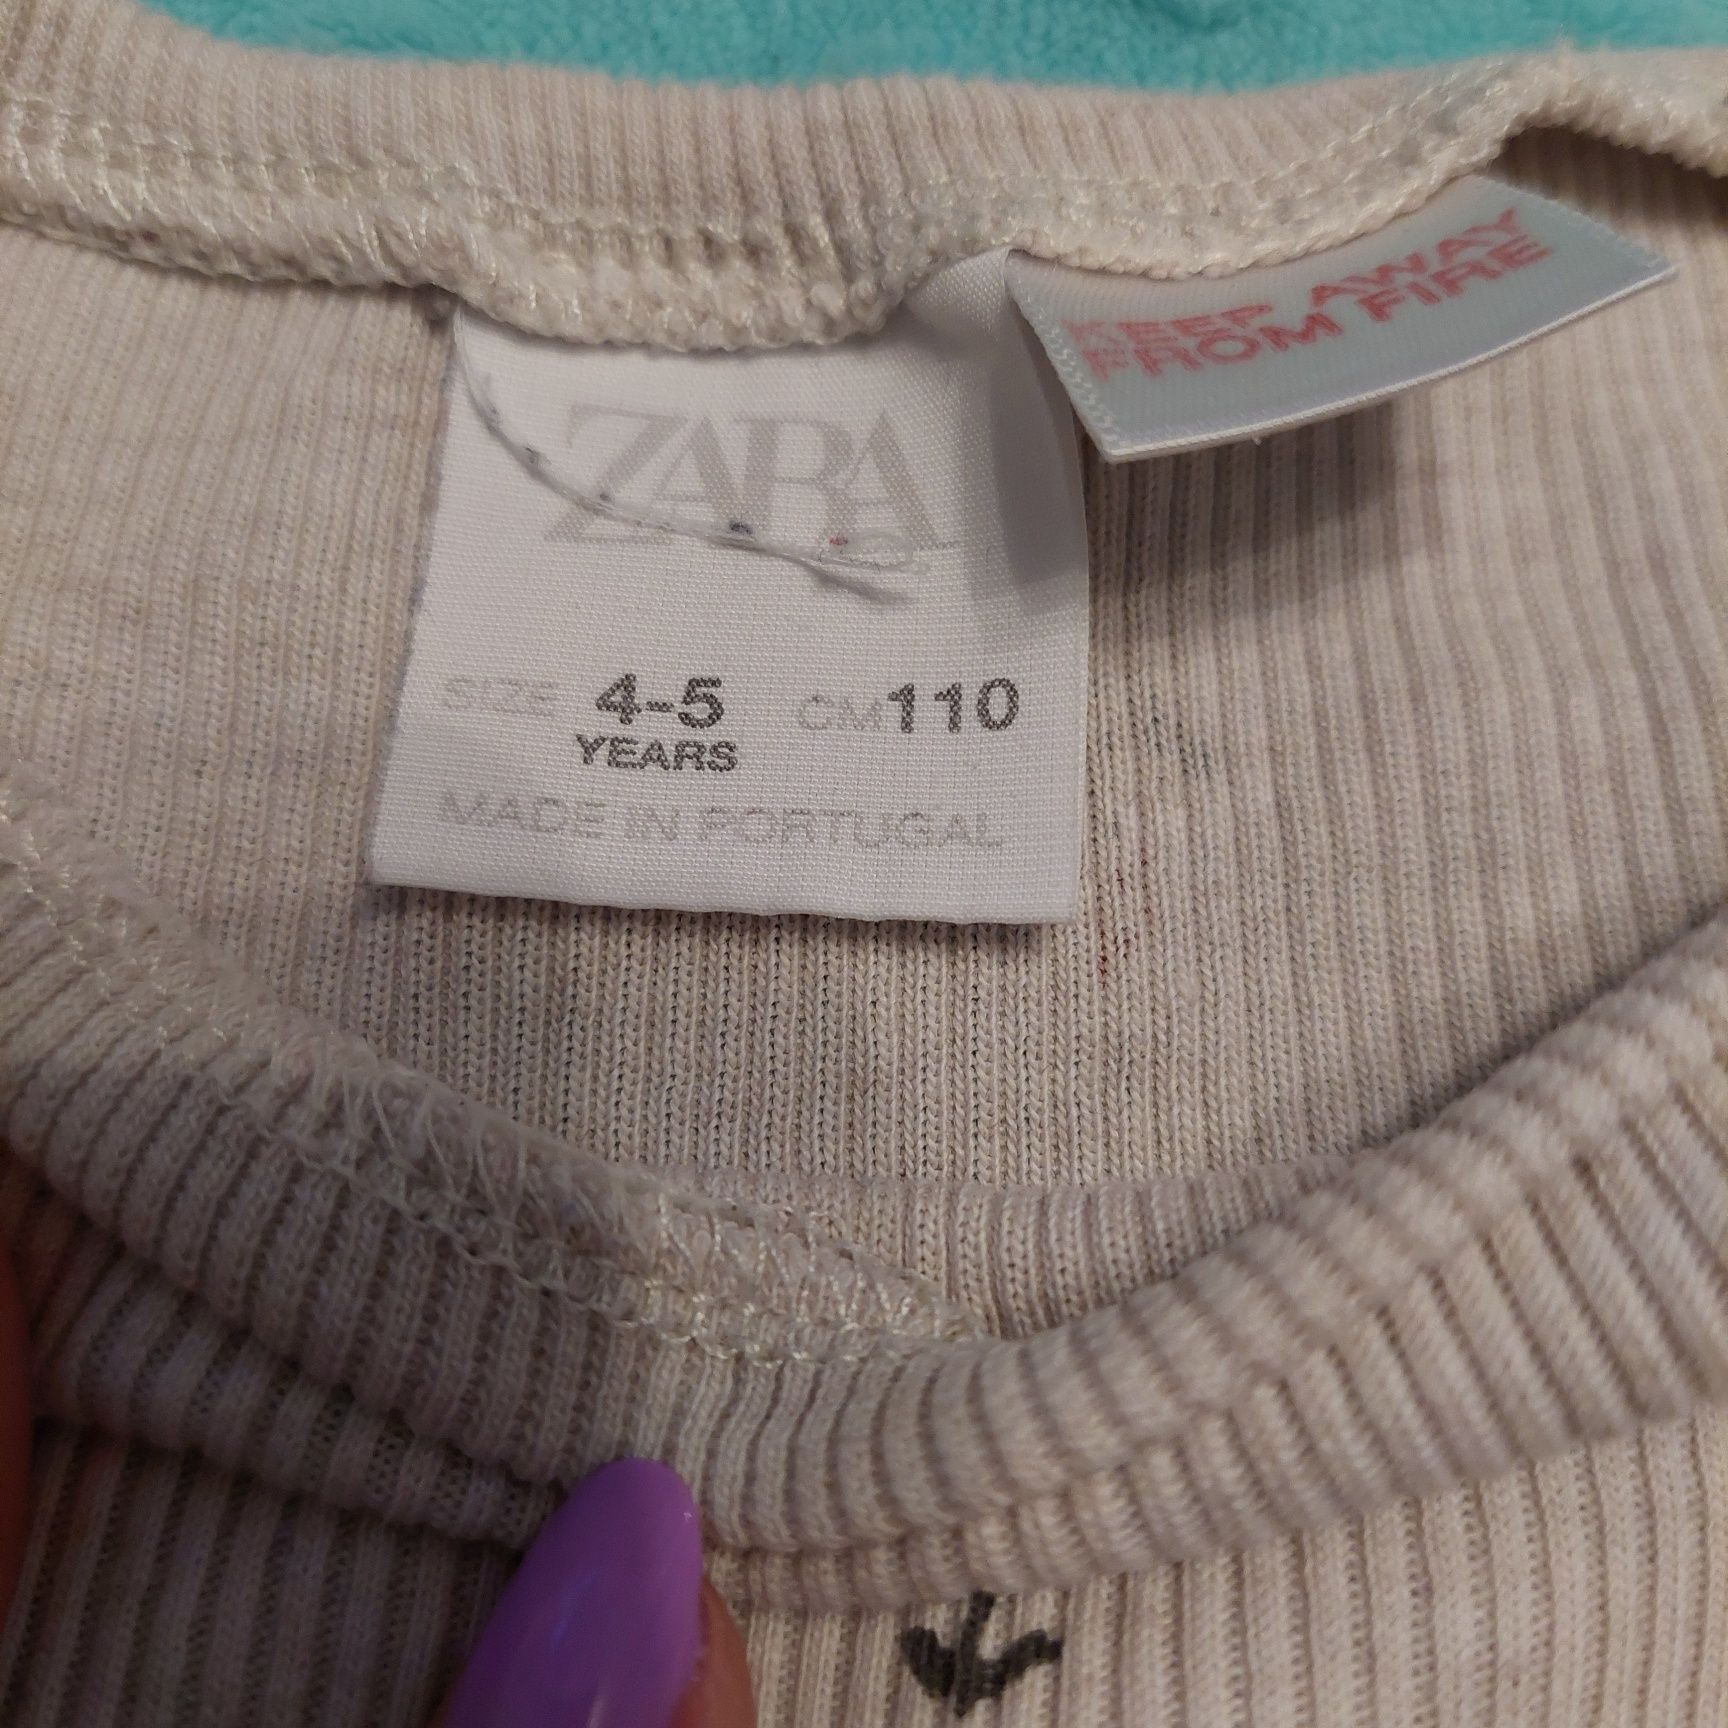 Bluzka marki Zara rozmiar 110